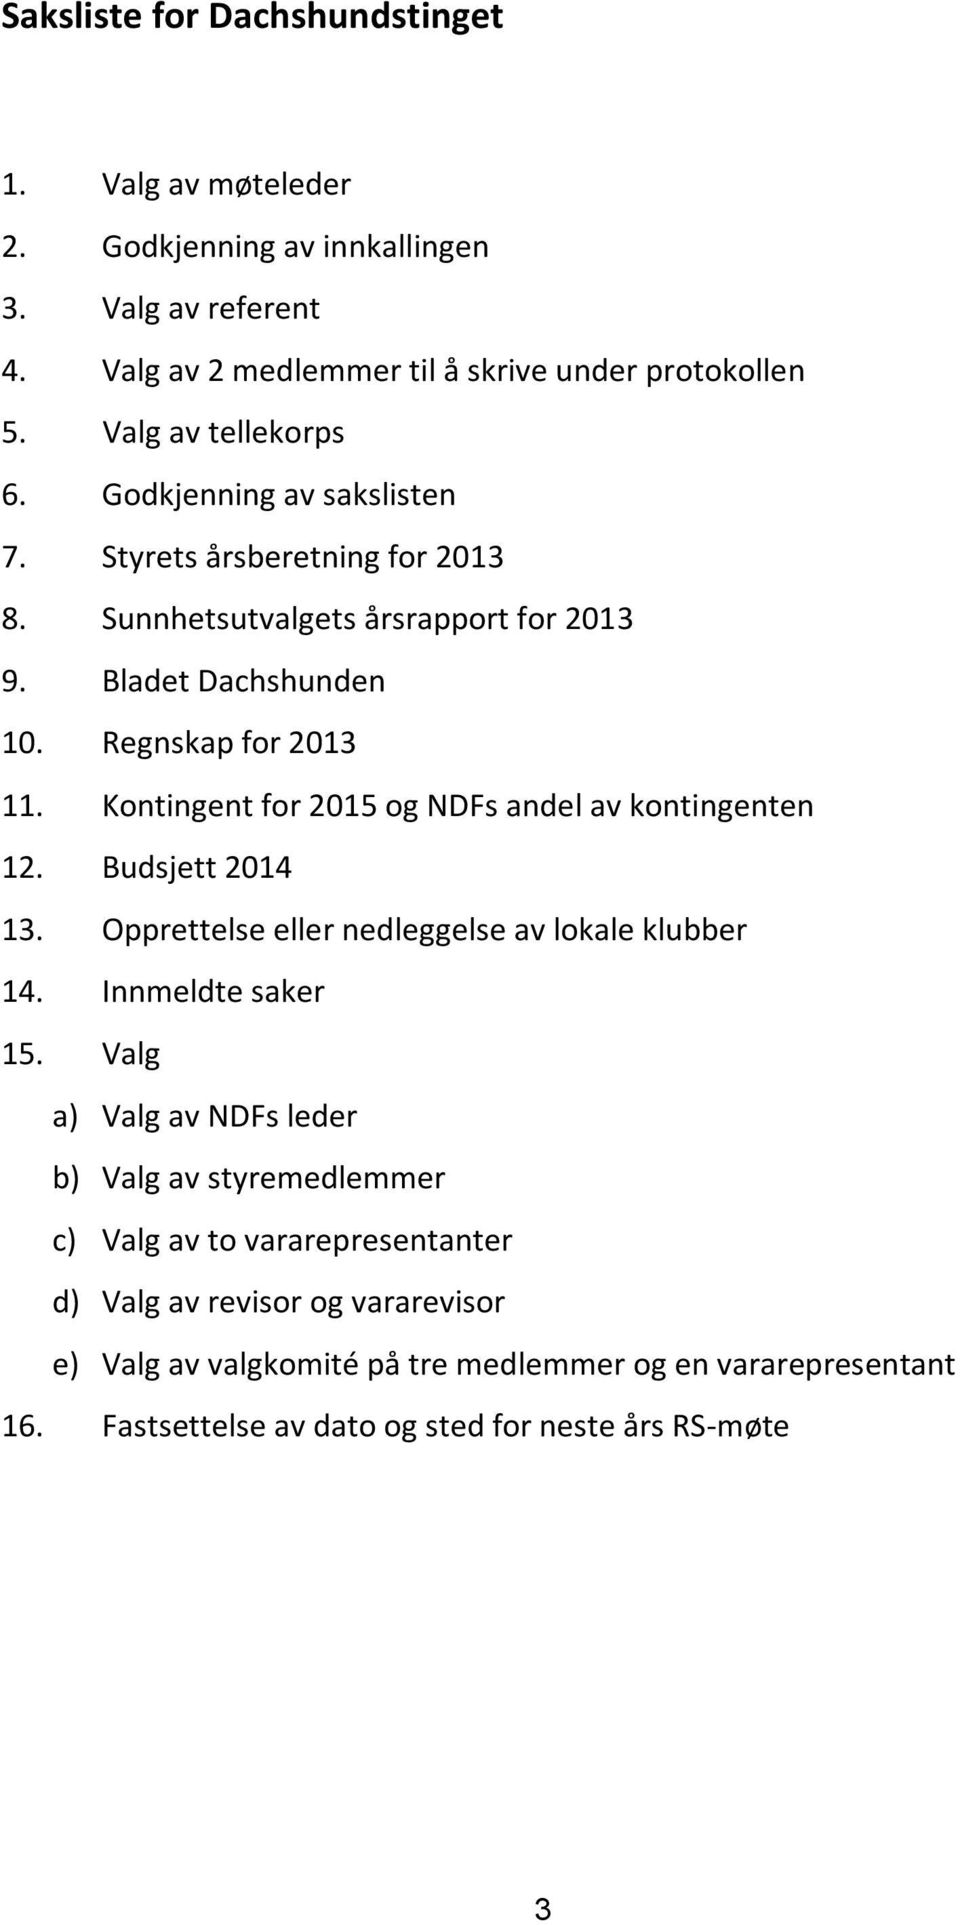 Kontingent for 2015 og NDFs andel av kontingenten 12. Budsjett 2014 13. Opprettelse eller nedleggelse av lokale klubber 14. Innmeldte saker 15.